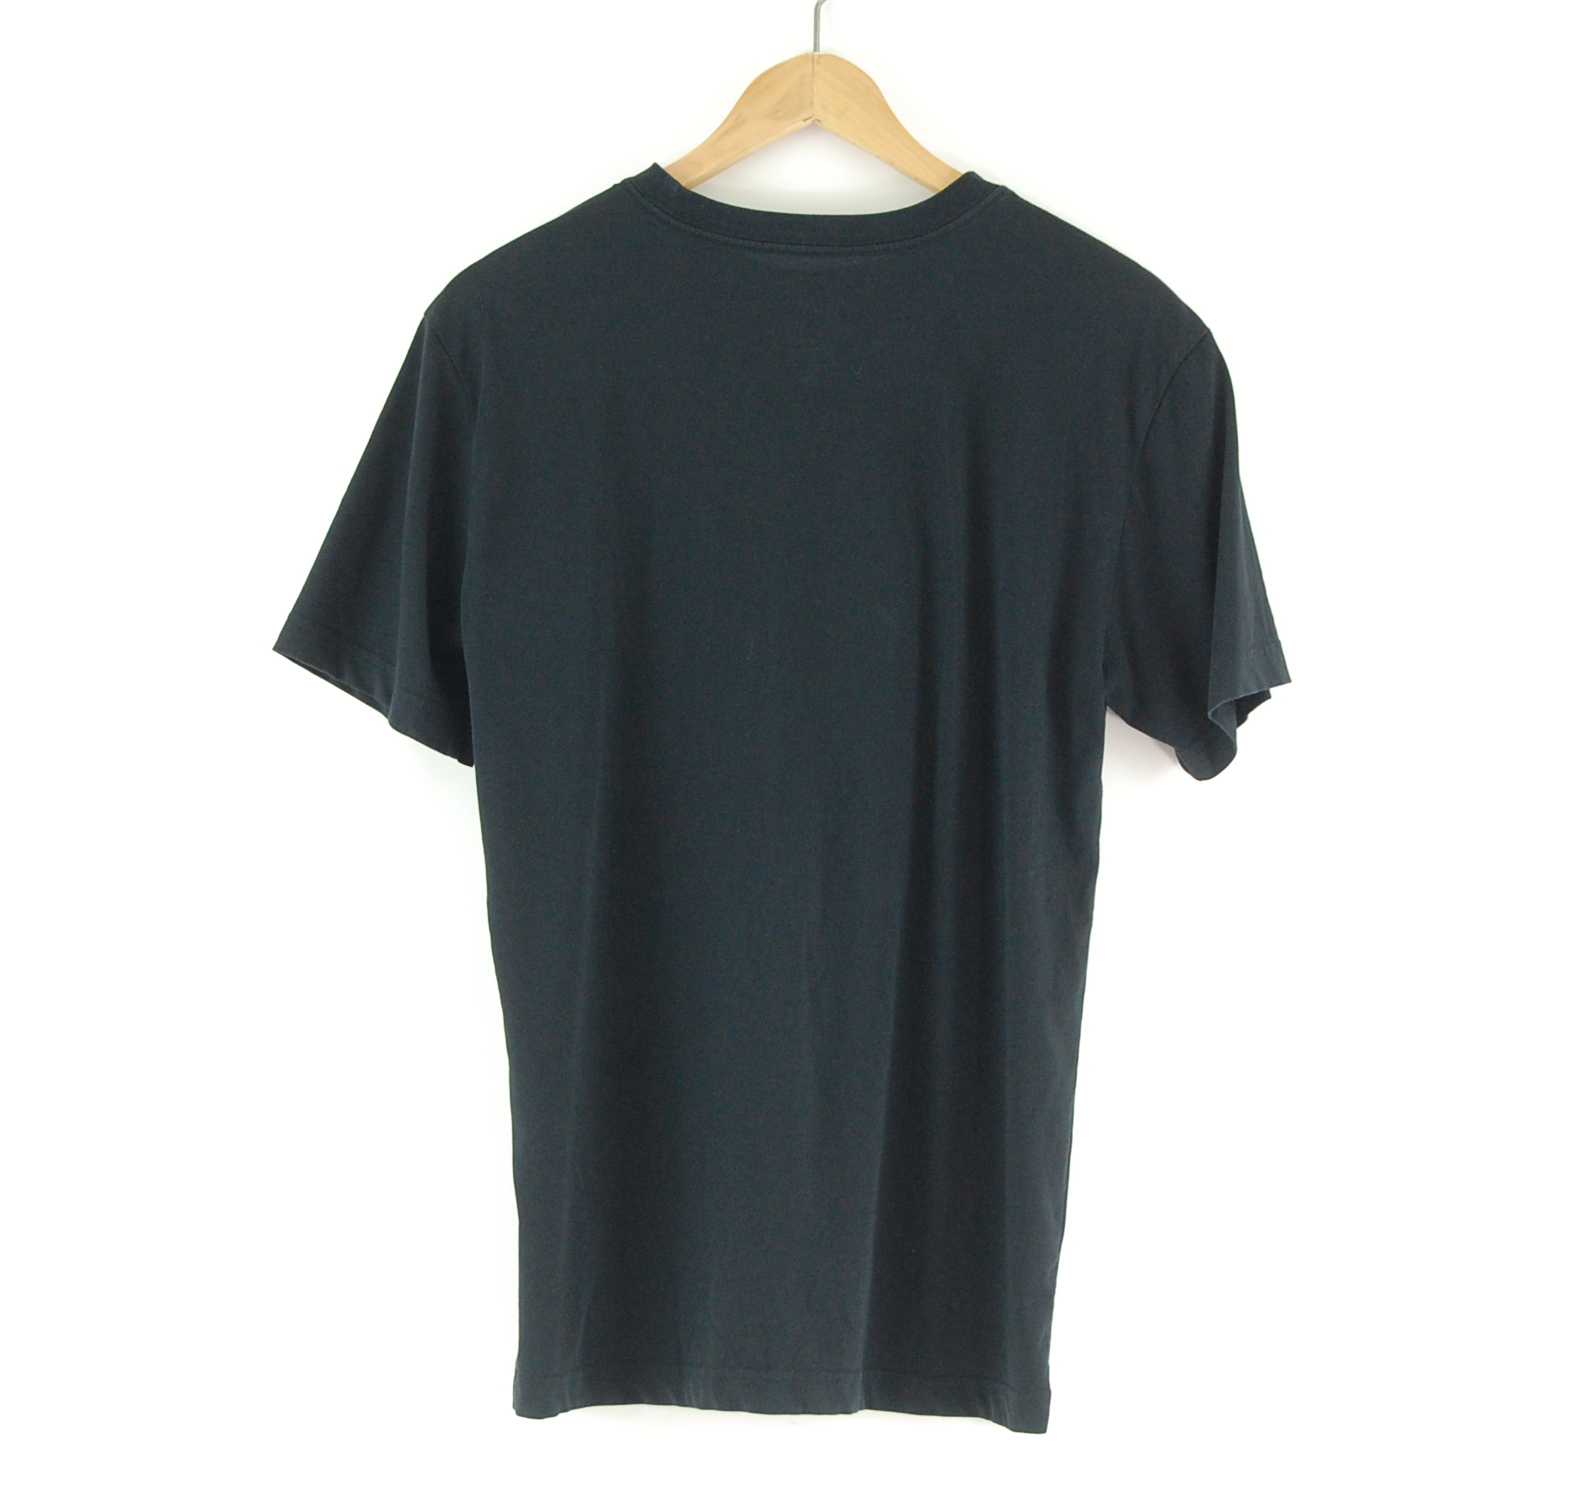 Nike Black Mamba T-shirt - UK M - Blue 17 Vintage Clothing